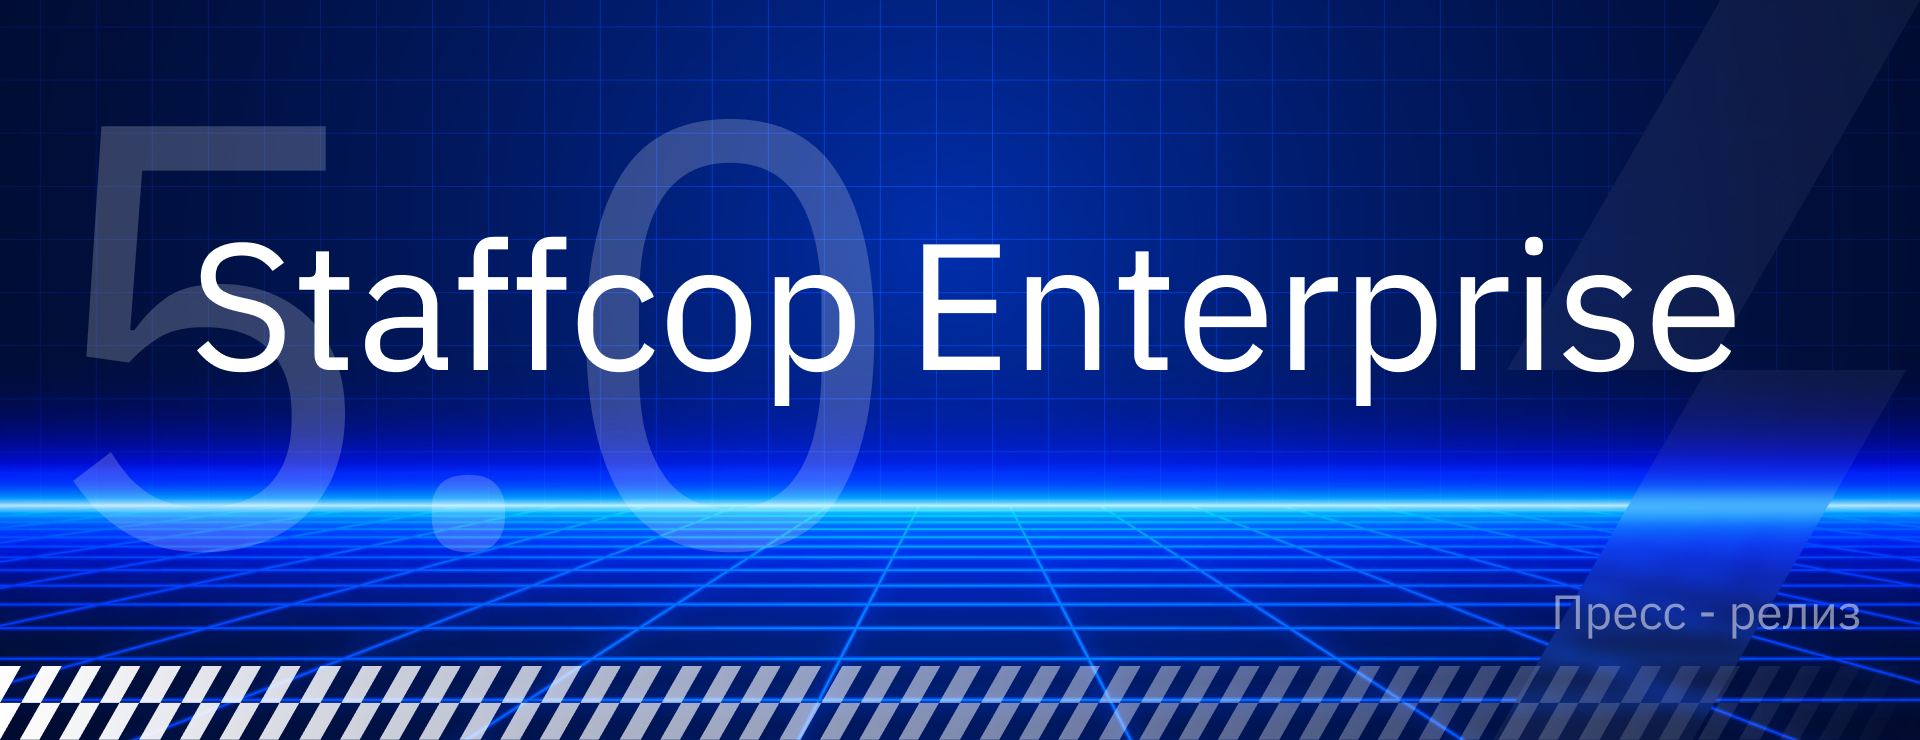 Пресс-релиз: Staffcop Enterprise – информационная безопасность на уровне 5.0